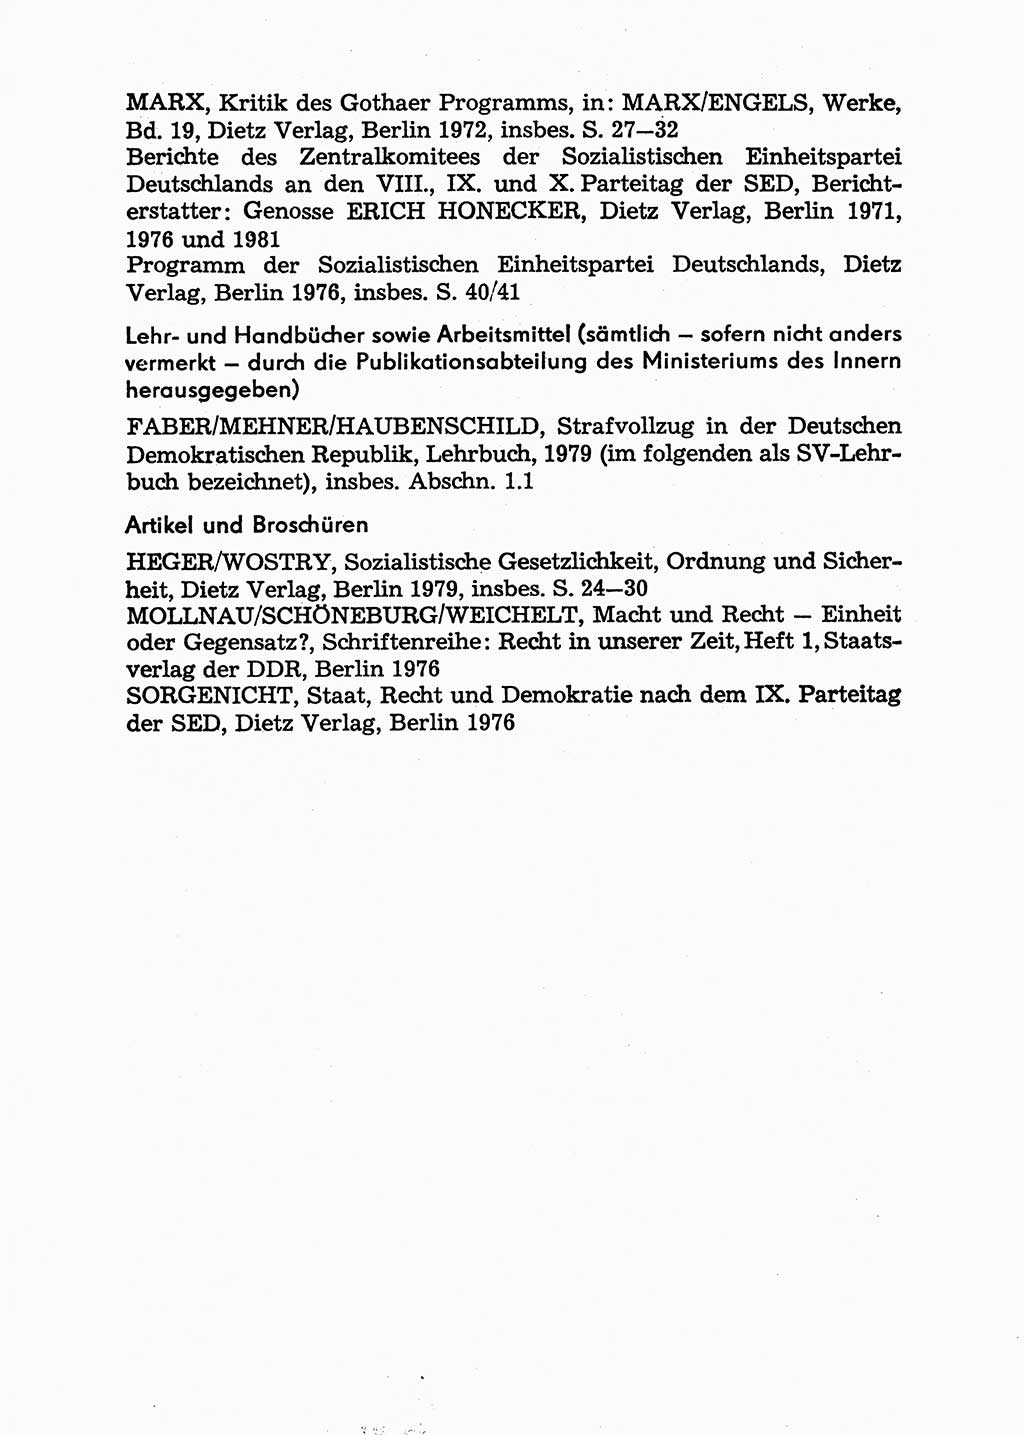 Handbuch für Betriebsangehörige, Abteilung Strafvollzug (SV) [Ministerium des Innern (MdI) Deutsche Demokratische Republik (DDR)] 1981, Seite 17 (Hb. BA Abt. SV MdI DDR 1981, S. 17)